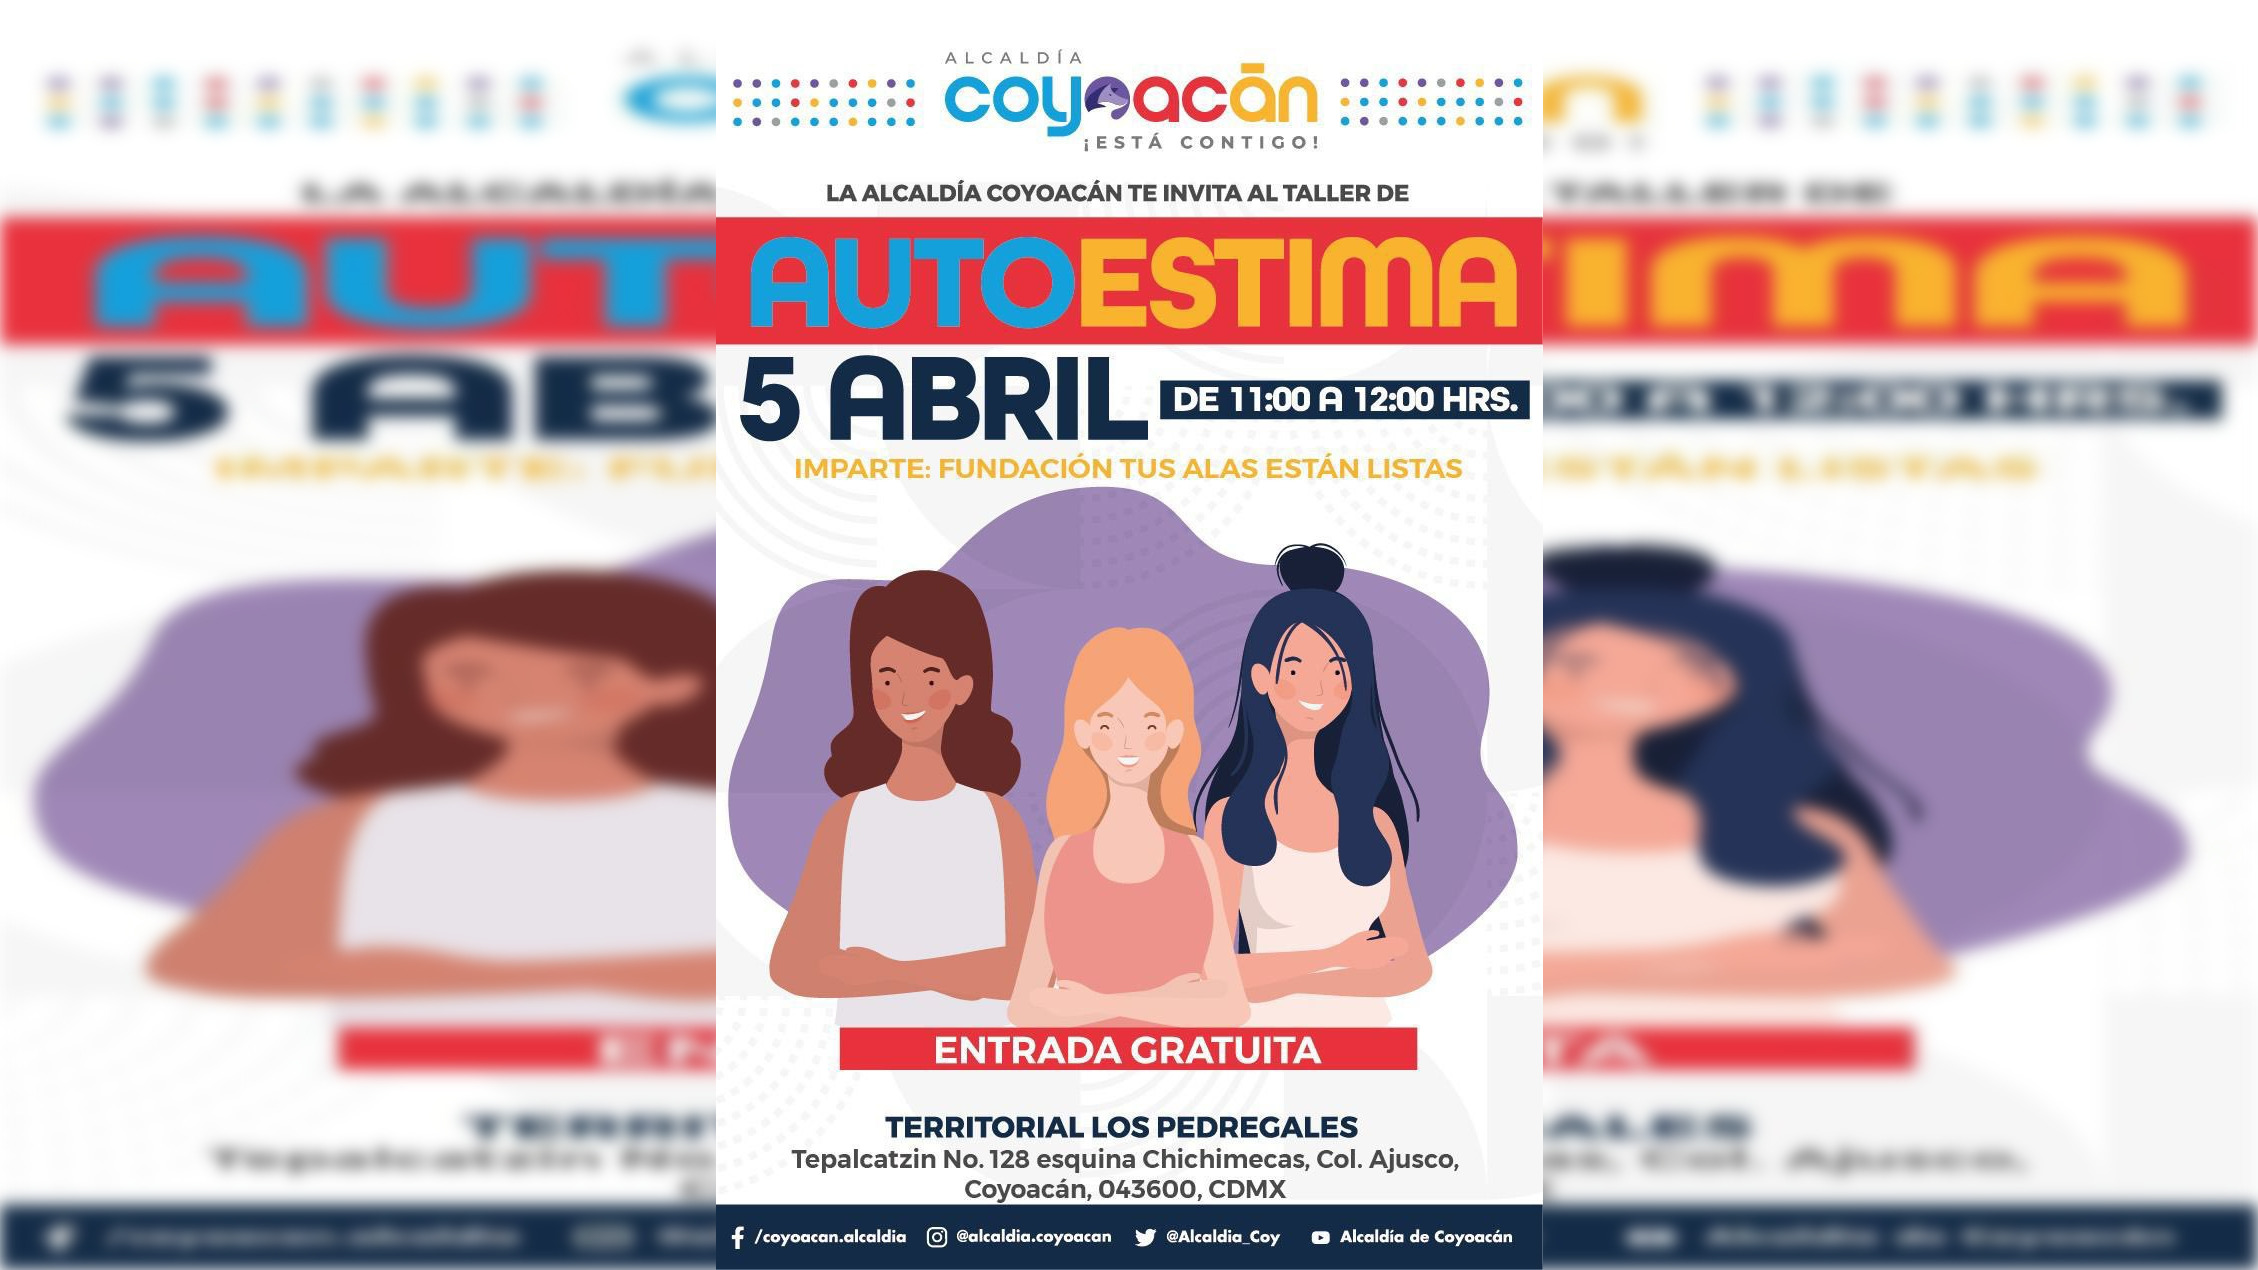 Invitan al taller “Autoestima” en Alcaldía Coyoacán